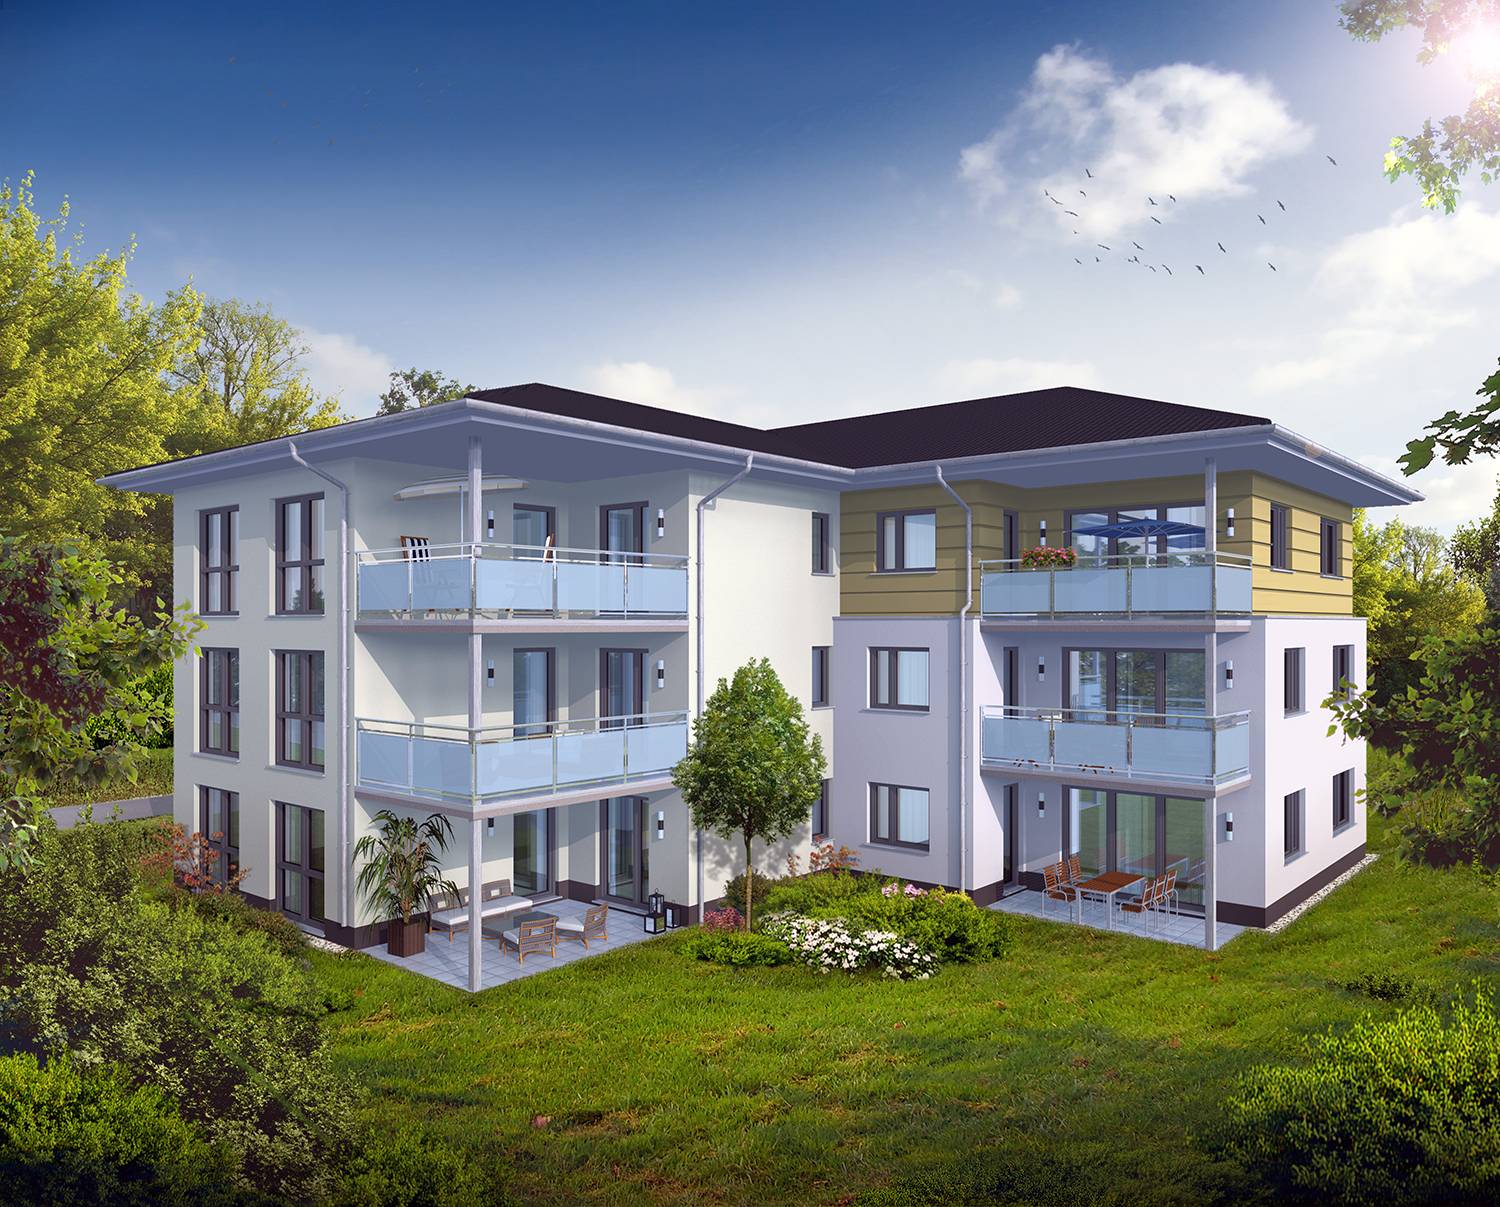 3D-Architekturvisualisierung eines geplanten Mehrfamilienhauses mit 9 Wohneinheiten in 08451 Crimmitschau, Glauchauer Landstraße. Auftraggeber dieser Architekturvisualisierung - Ingenieurbüro Kreatives Bauen aus 08058 Zwickau. Visualisierung wurde im Jahre 2022 erstellt